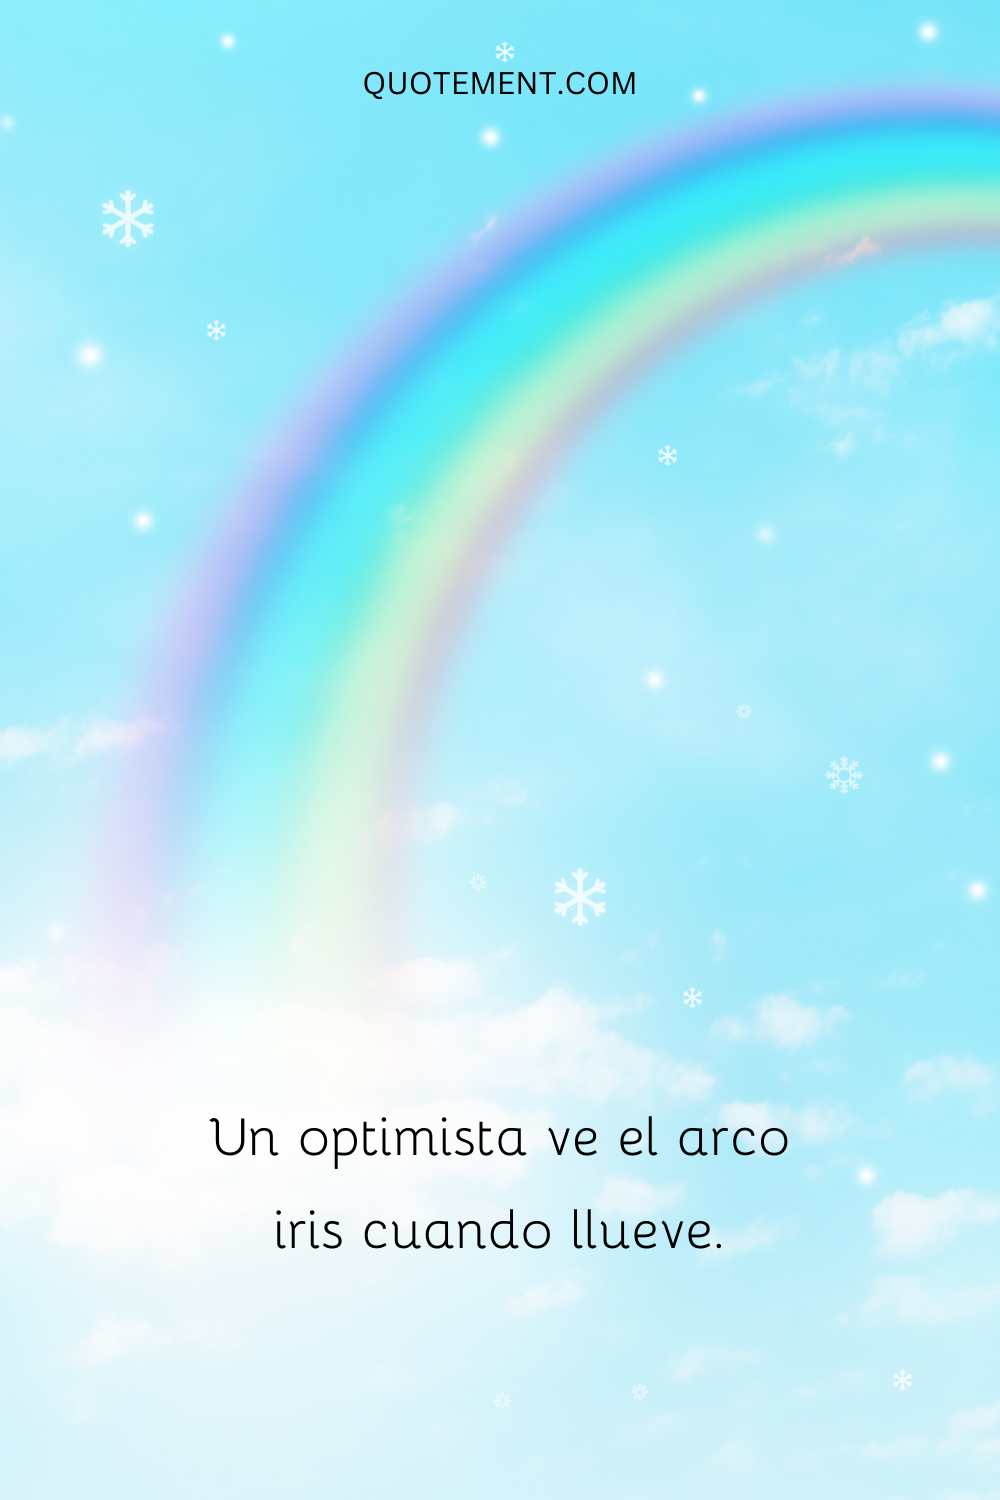 Un optimista ve el arco iris cuando llueve